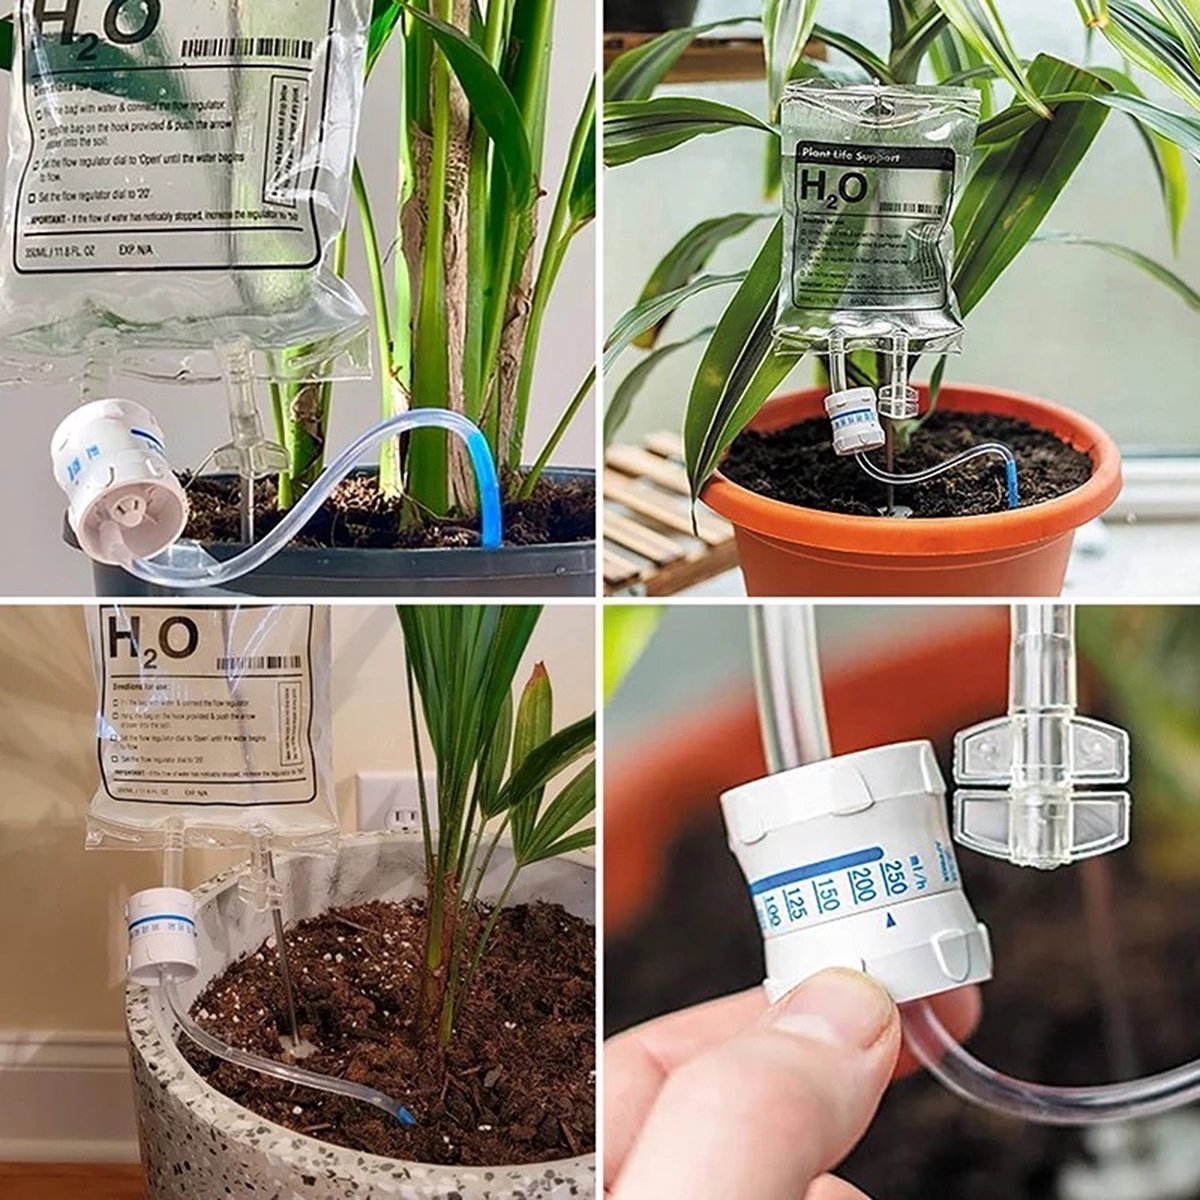 infusion de plant H2o - Goutteur d'eau - Arrosage automatique des plantes -  Irrigation... | bol.com